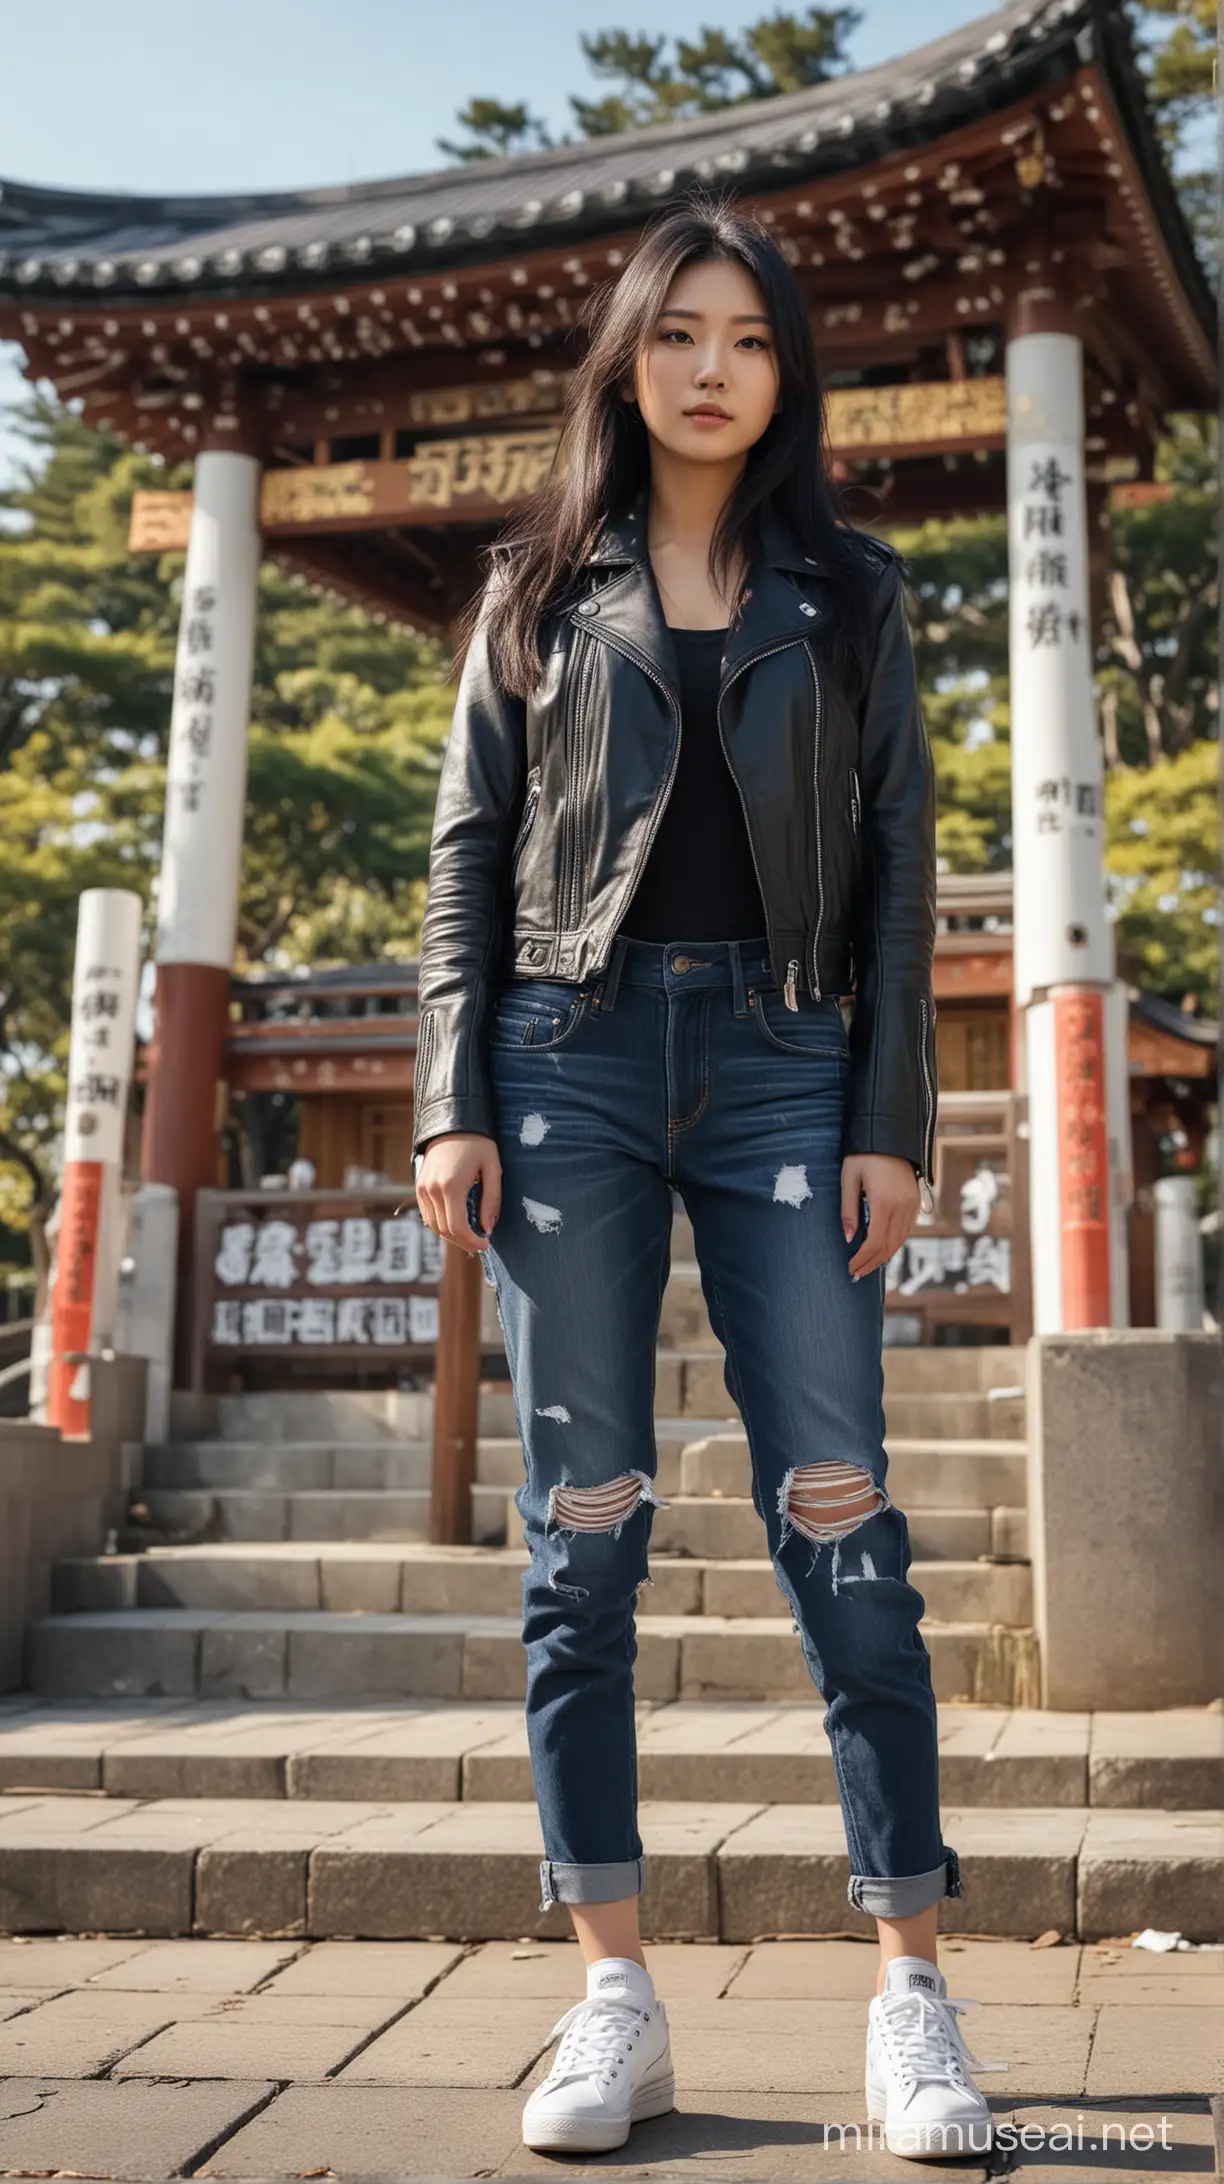 Stylish Korean Woman Posing at Nagoya Shrine on Sunny Morning